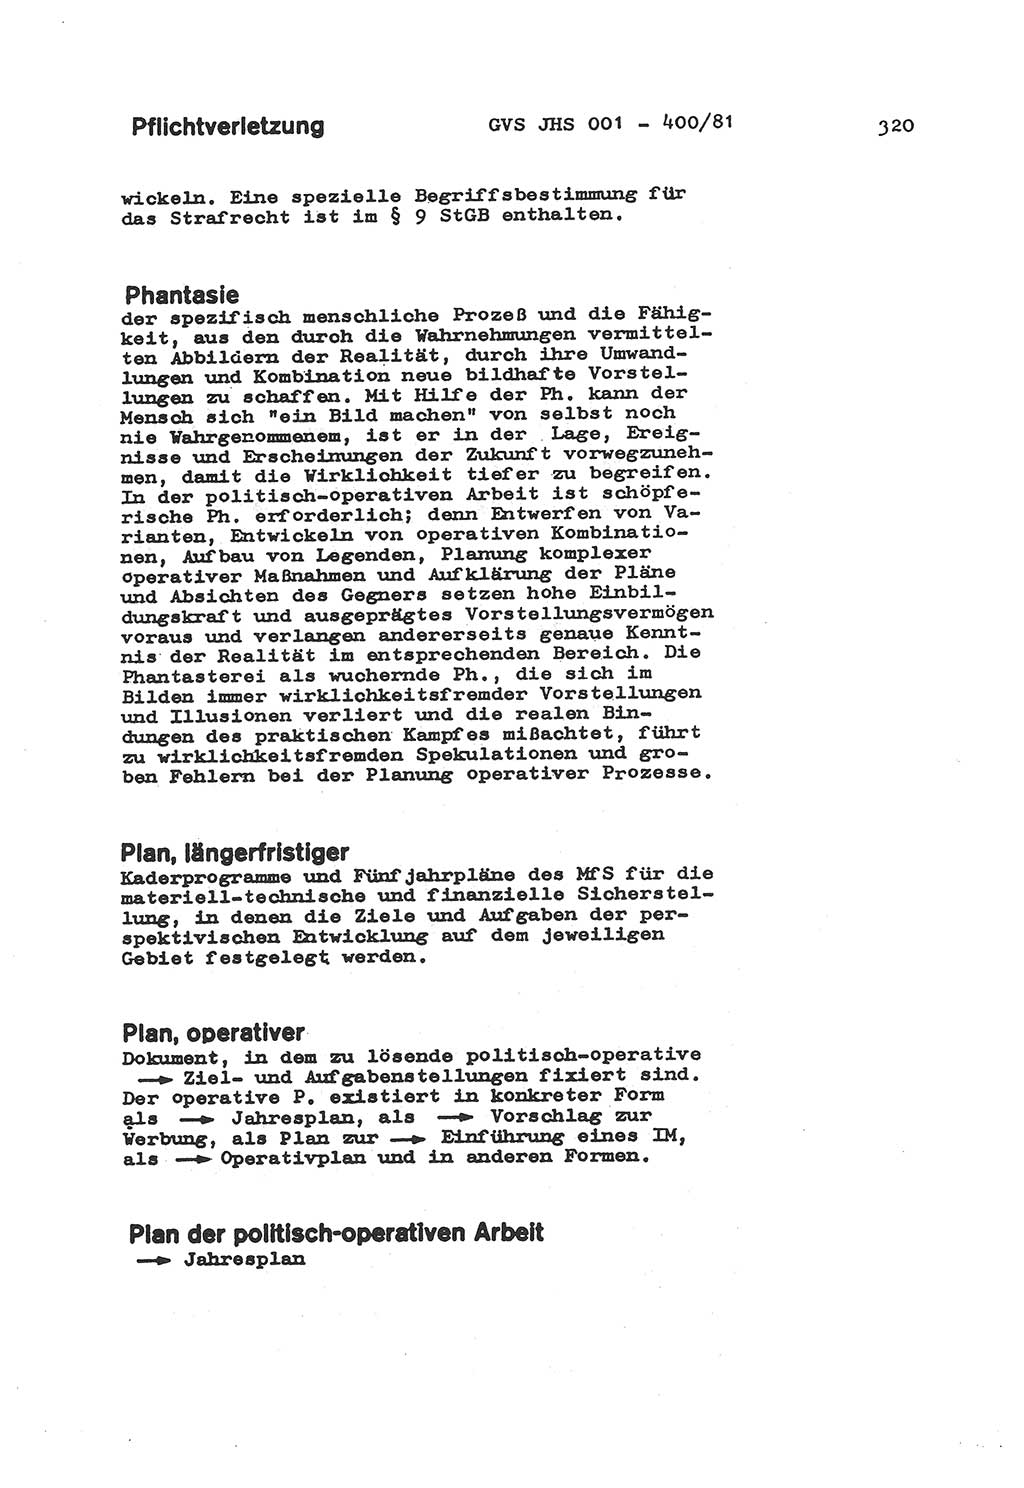 Wörterbuch der politisch-operativen Arbeit, Ministerium für Staatssicherheit (MfS) [Deutsche Demokratische Republik (DDR)], Juristische Hochschule (JHS), Geheime Verschlußsache (GVS) o001-400/81, Potsdam 1985, Blatt 320 (Wb. pol.-op. Arb. MfS DDR JHS GVS o001-400/81 1985, Bl. 320)